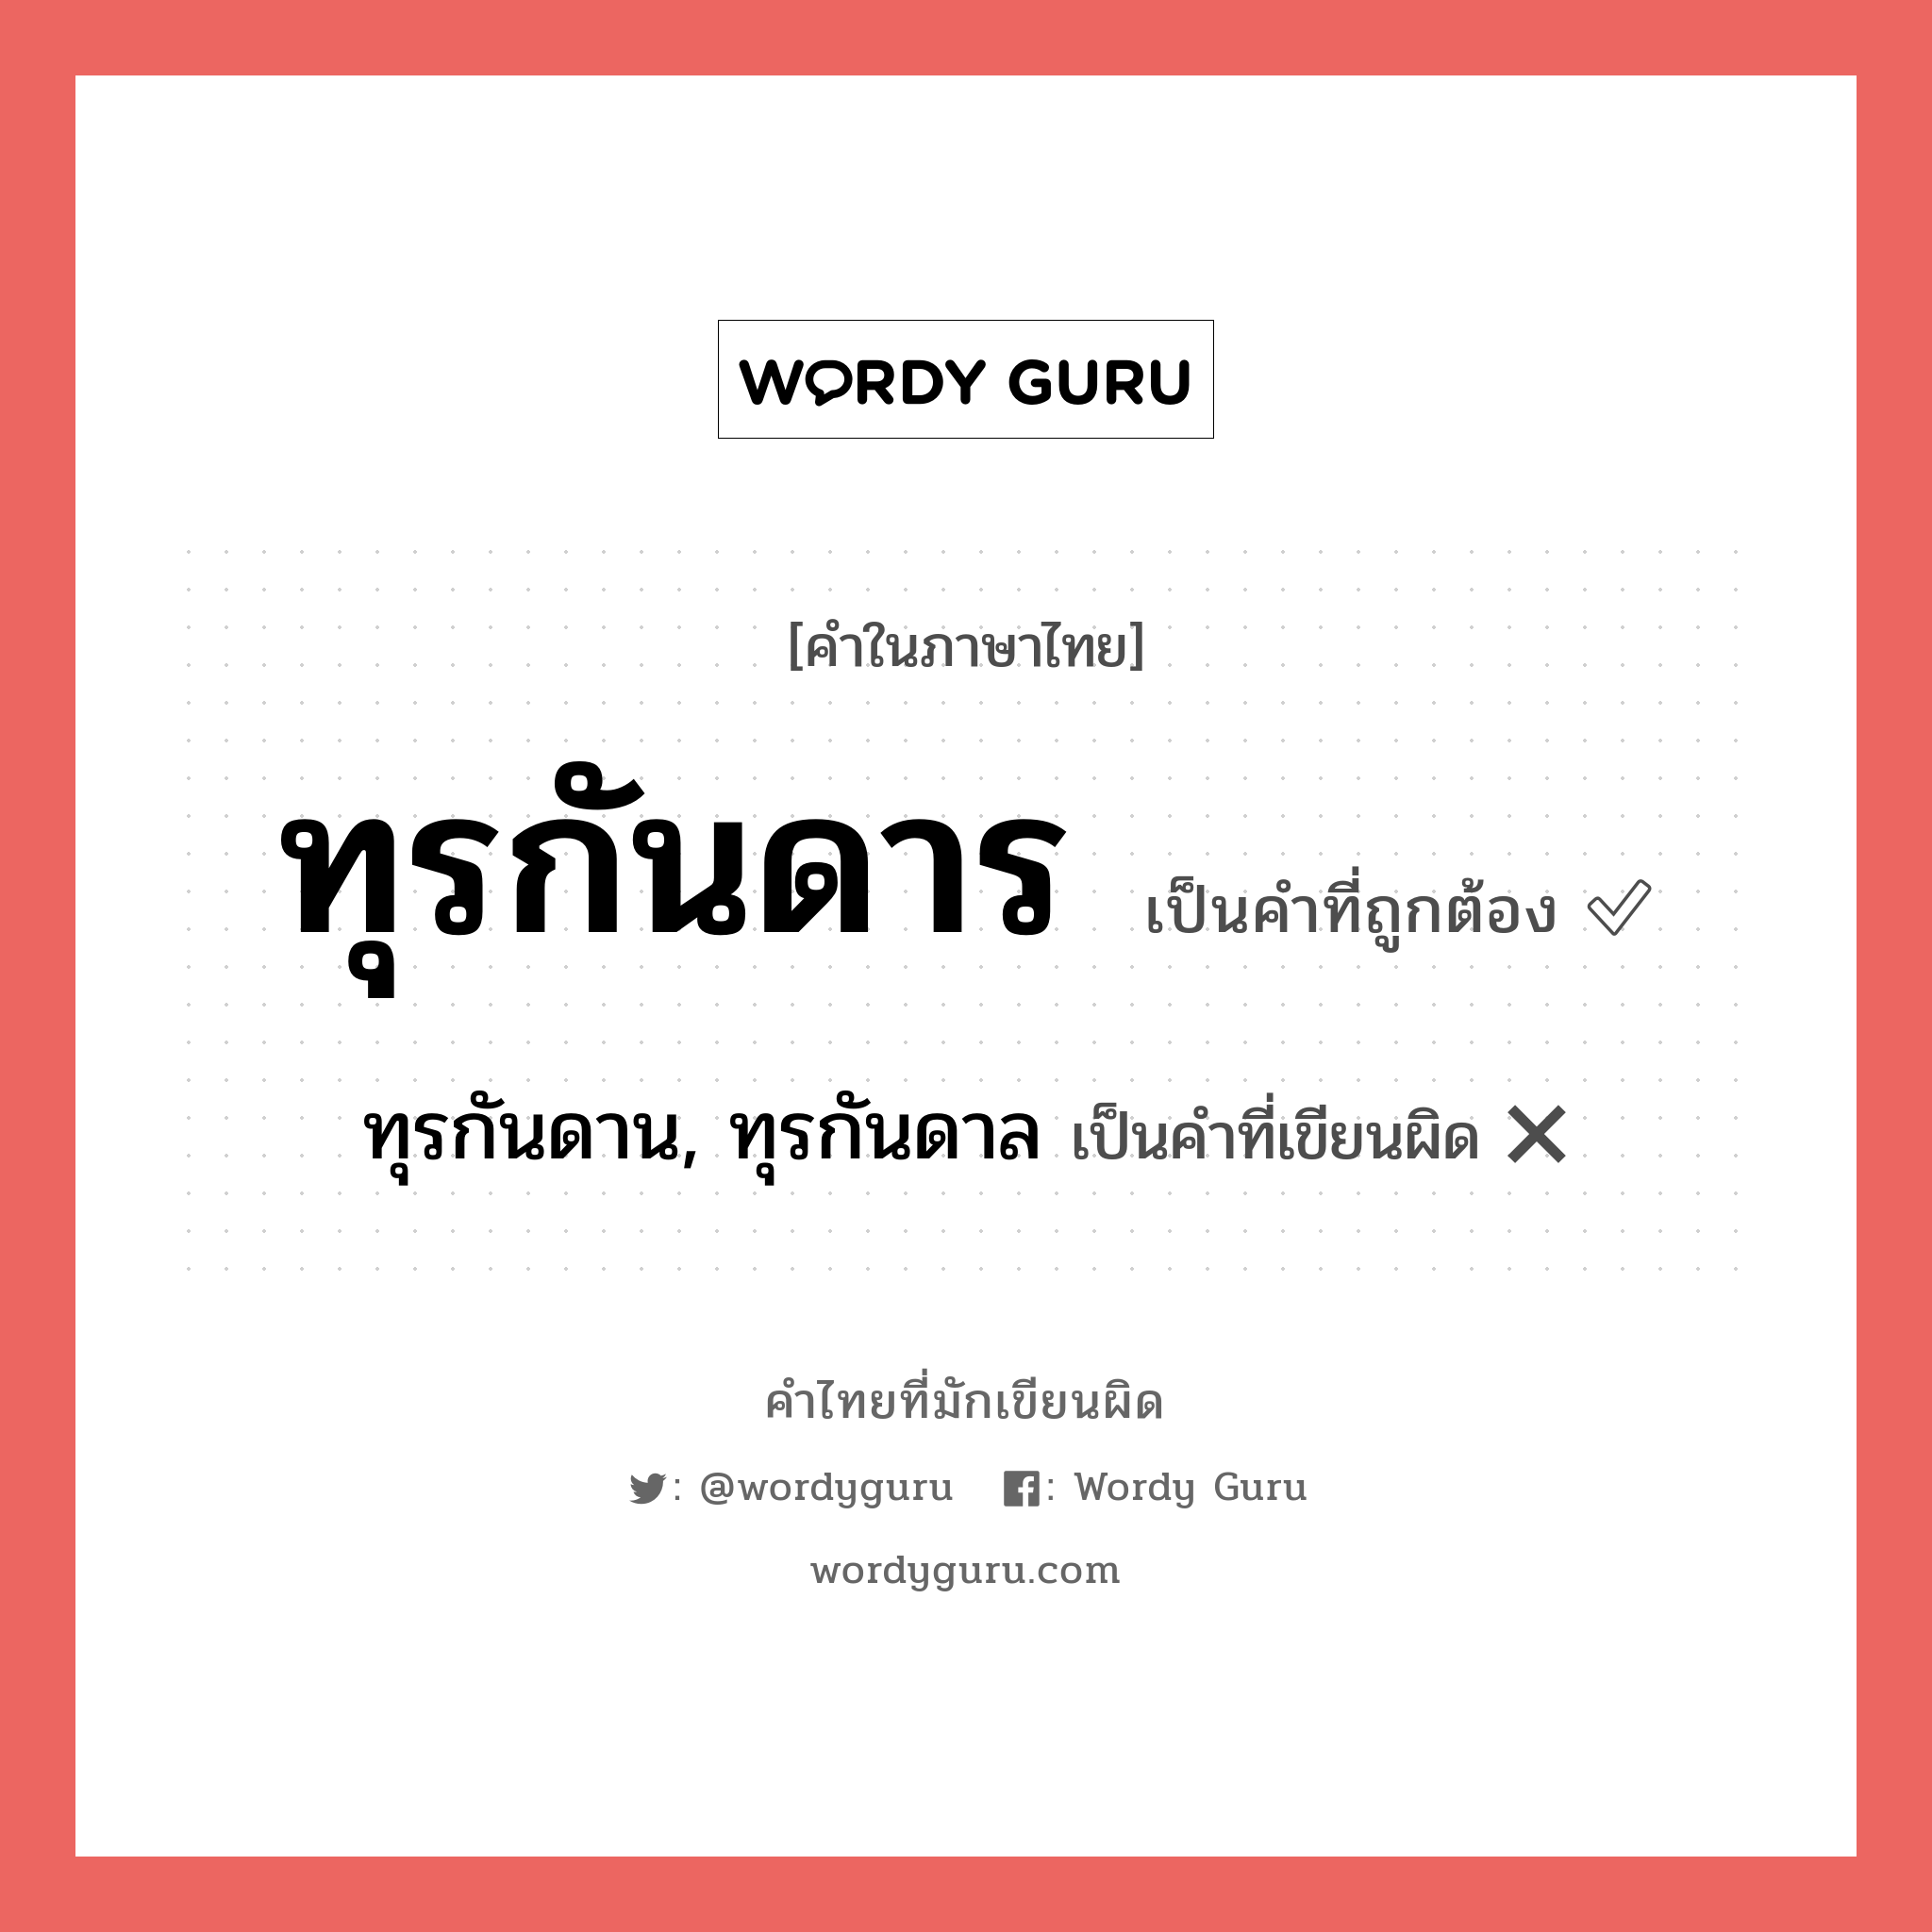 ทุรกันดาน, ทุรกันดาล หรือ ทุรกันดาร คำไหนเขียนถูก?, คำในภาษาไทยที่มักเขียนผิด ทุรกันดาน, ทุรกันดาล คำที่ผิด ❌ ทุรกันดาร